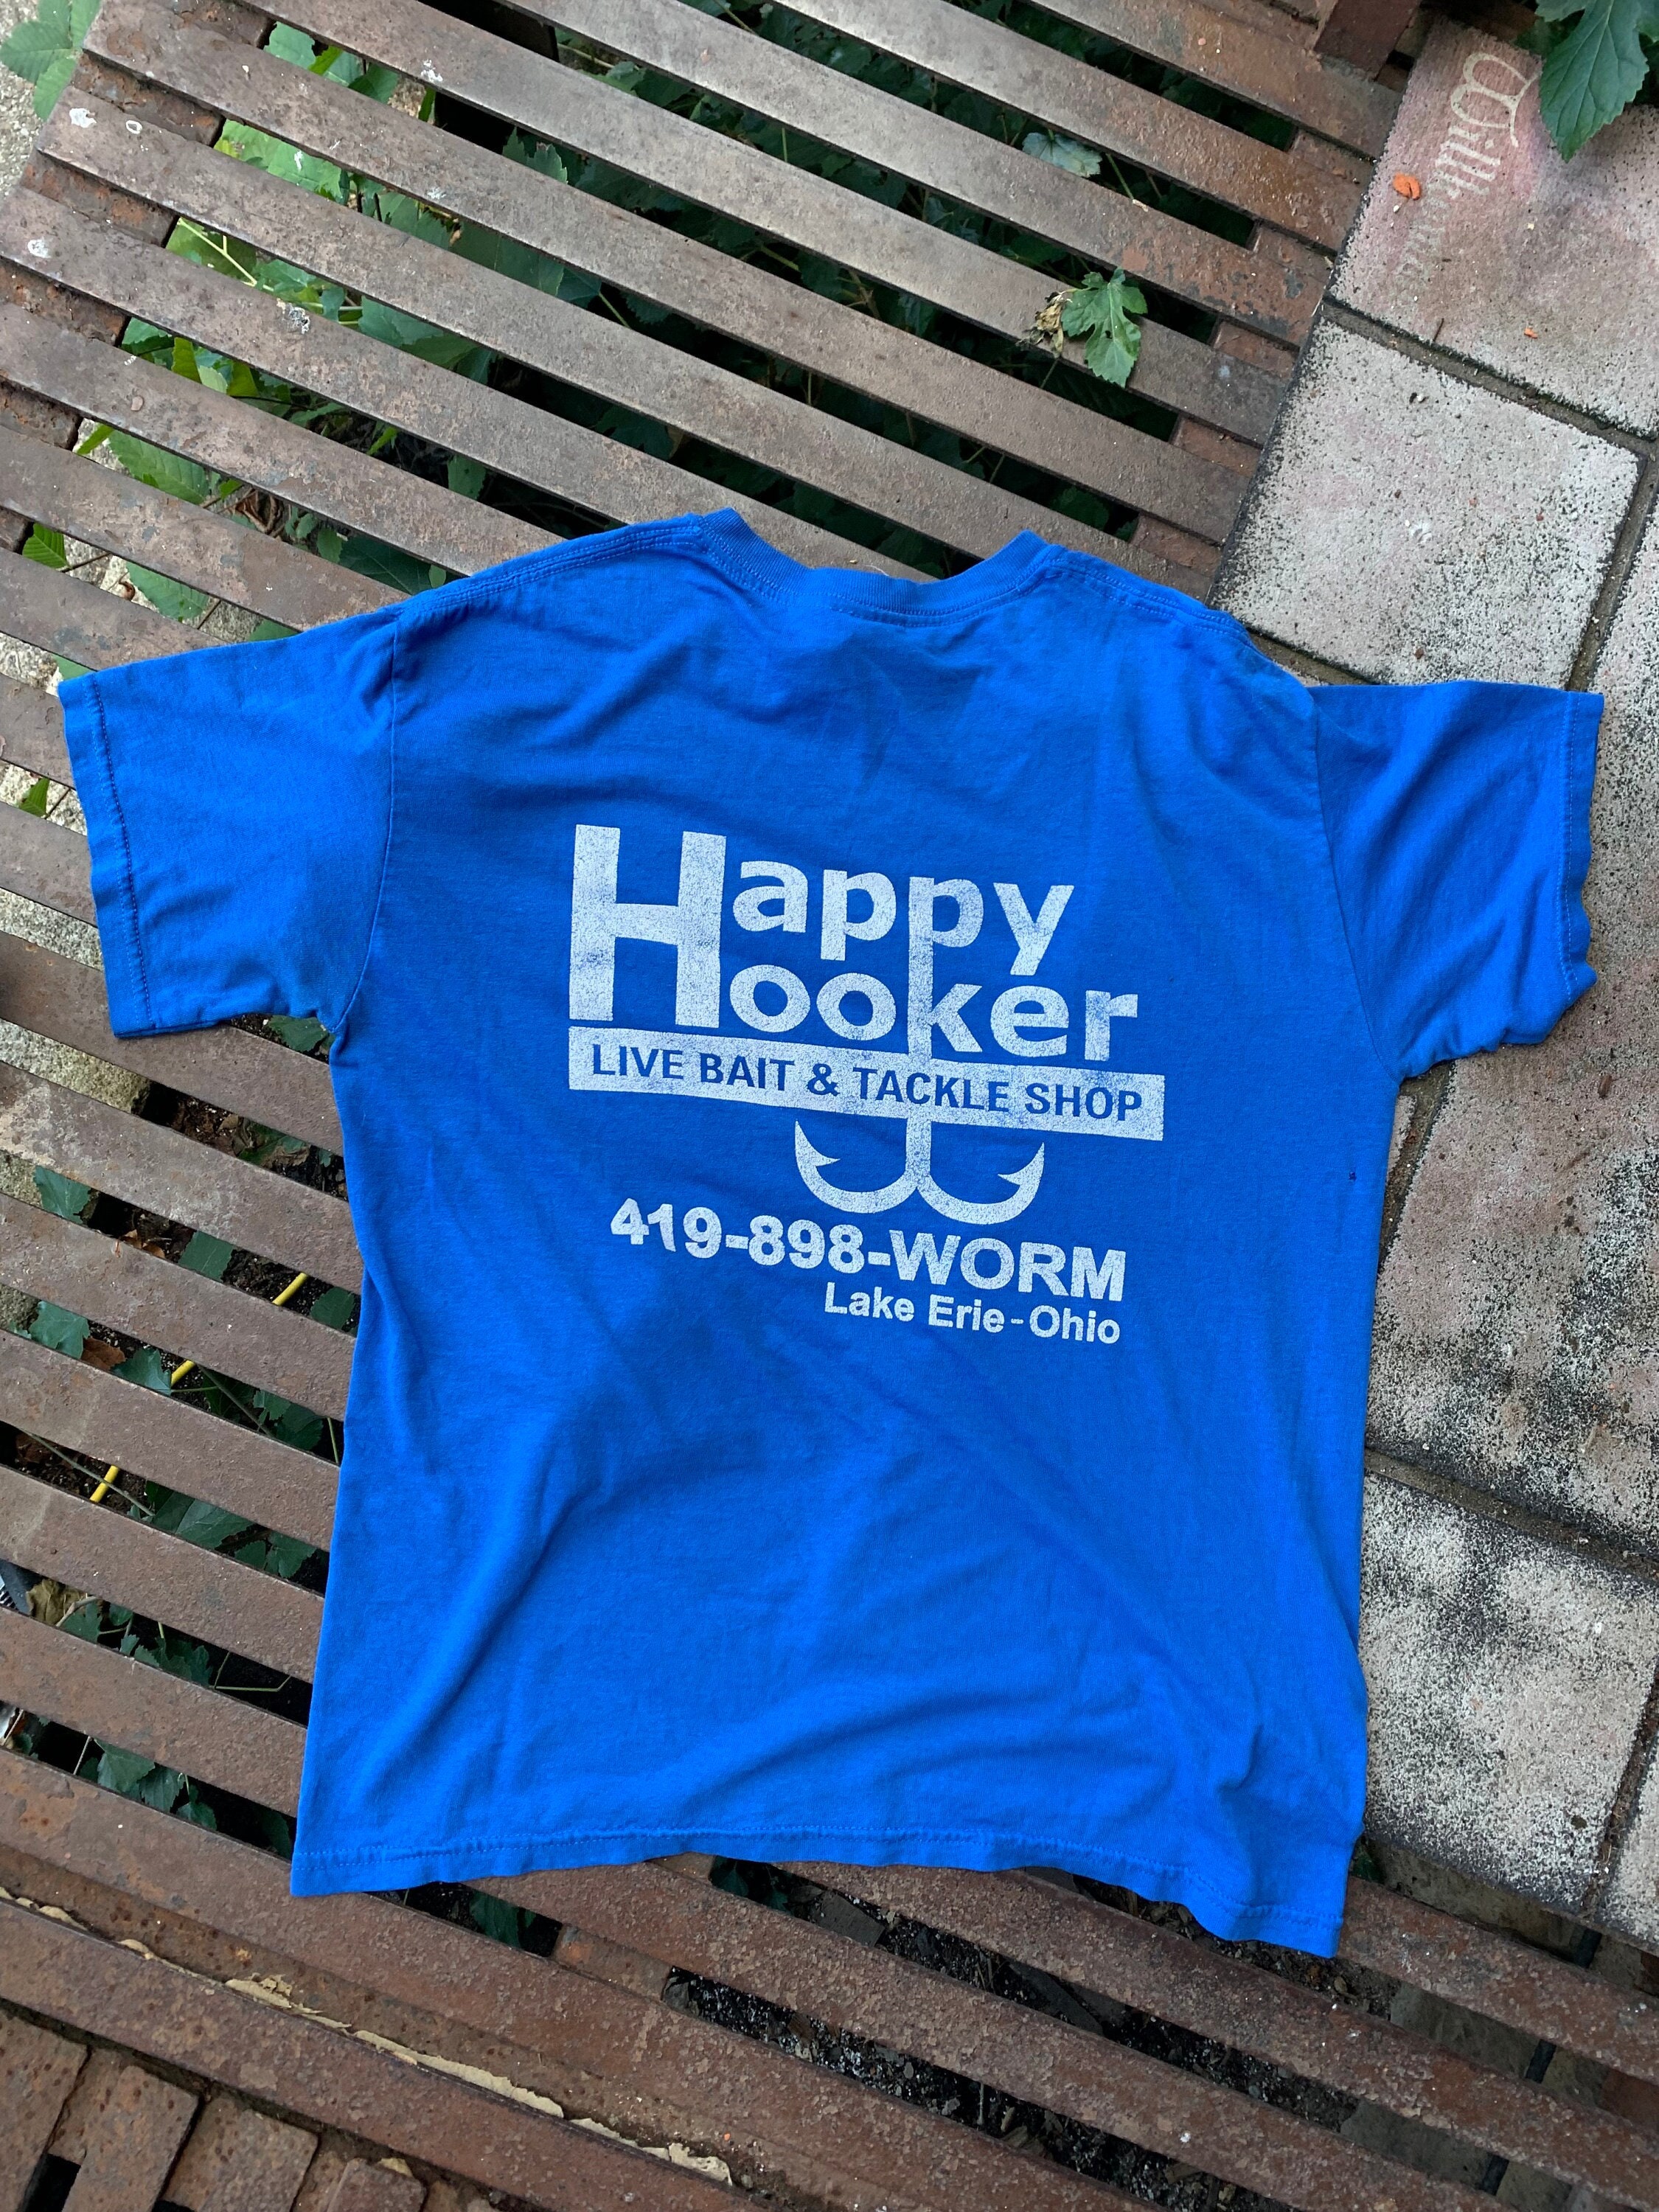 Happy Hooker Live Bait & Tackle Shop / Vintage Advertising T Shirt